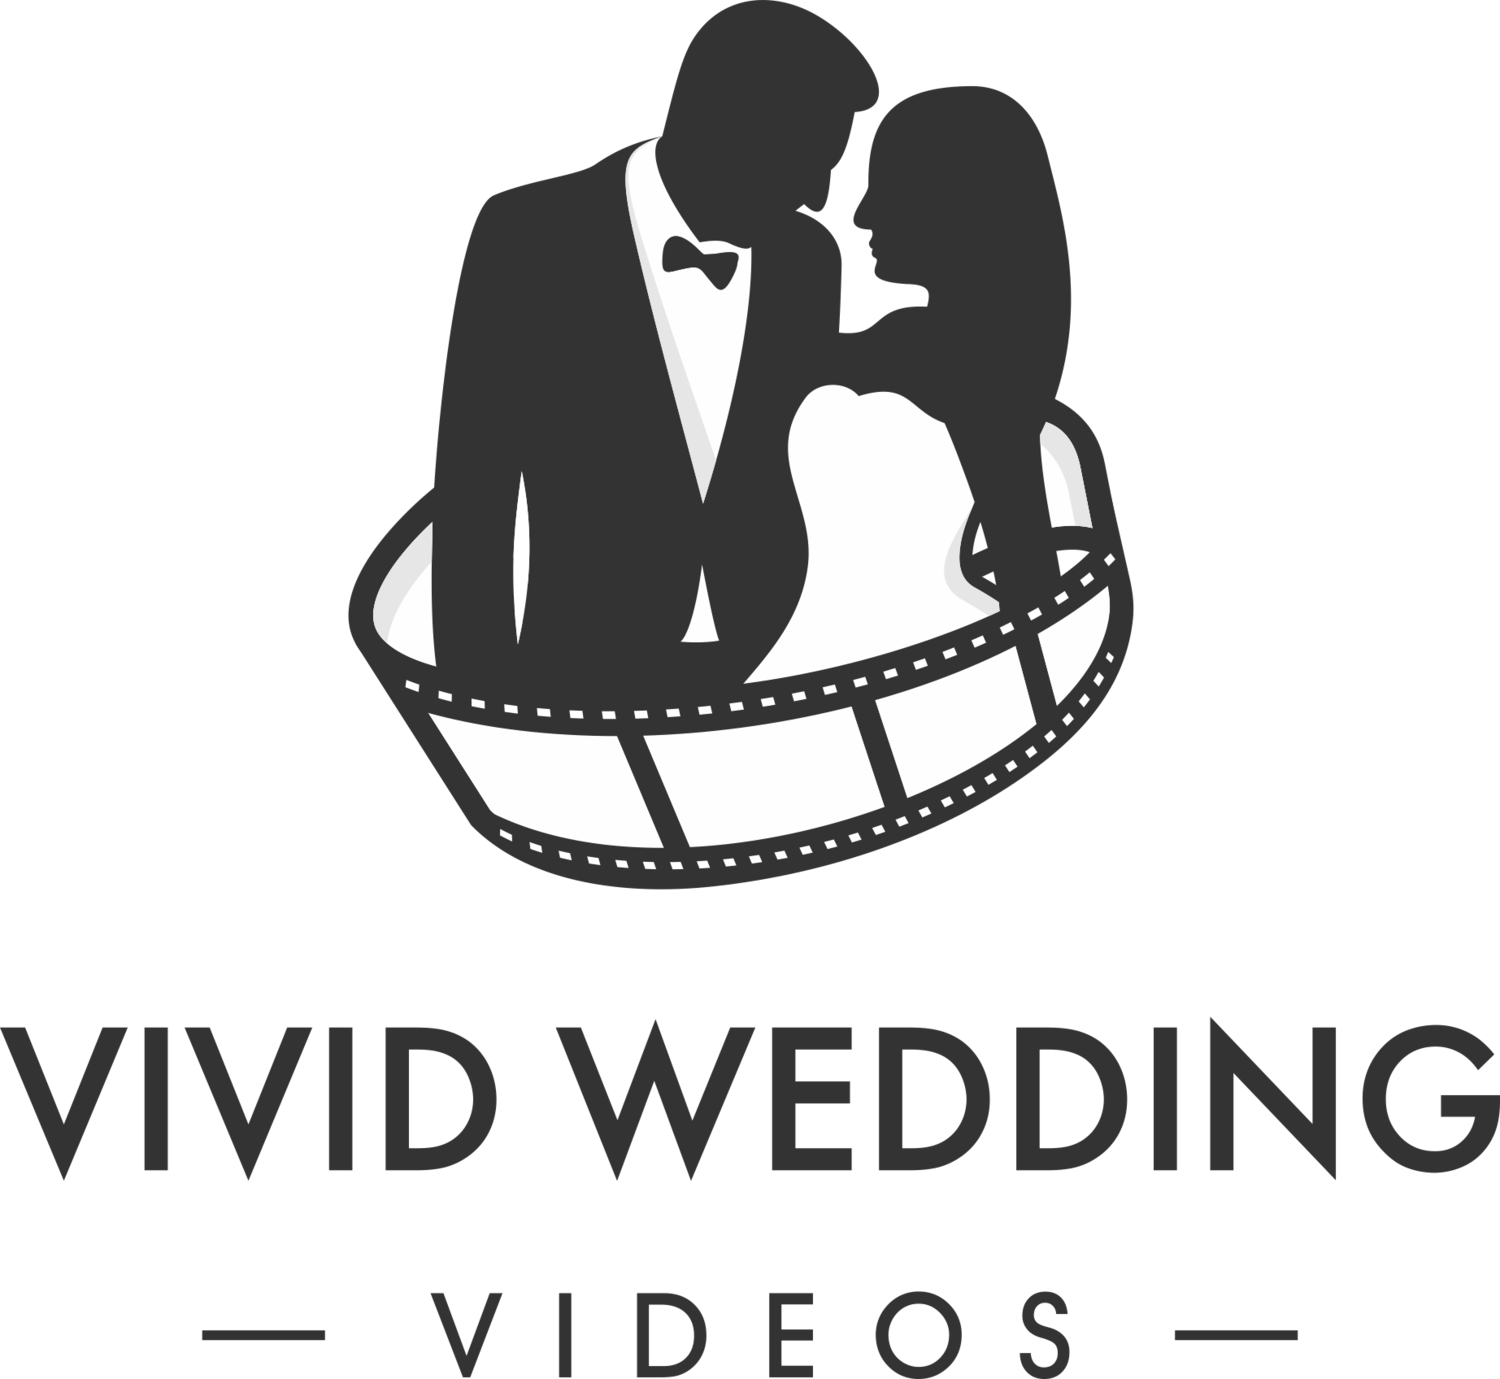 Vivid Wedding Videos